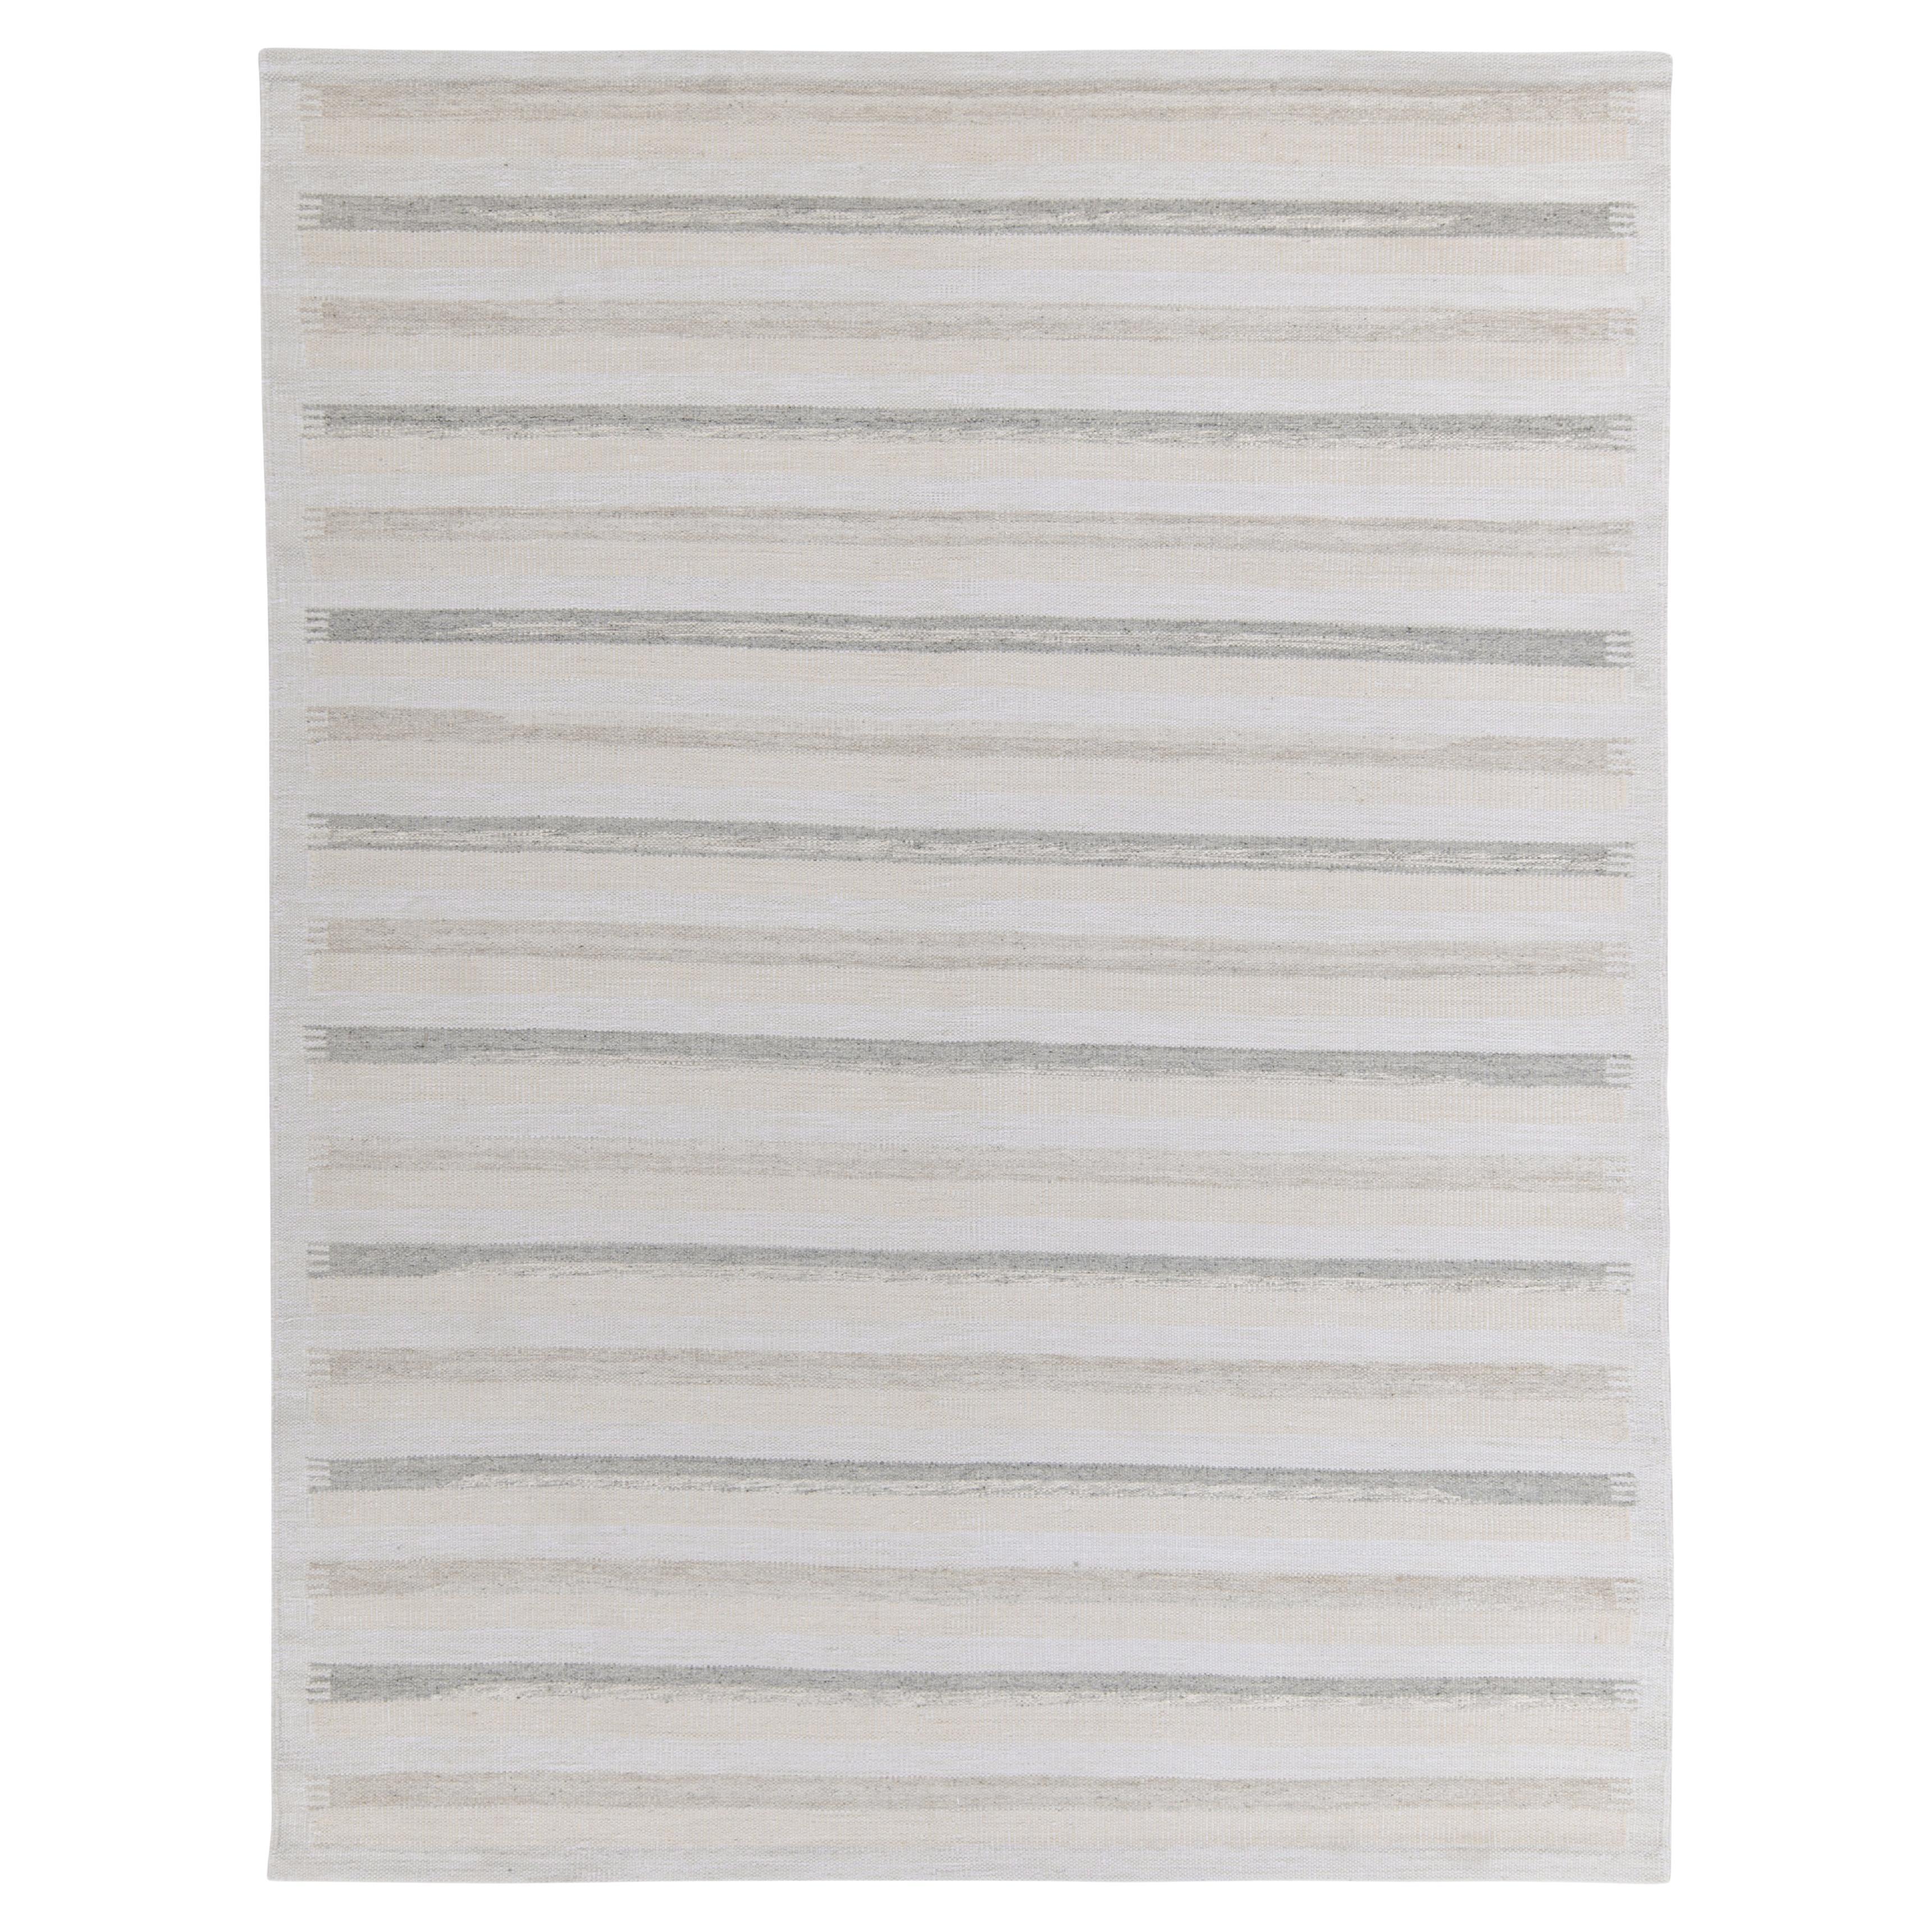 Teppich & Kelim-Teppich im skandinavischen Stil in Grau mit weißen Streifenmustern